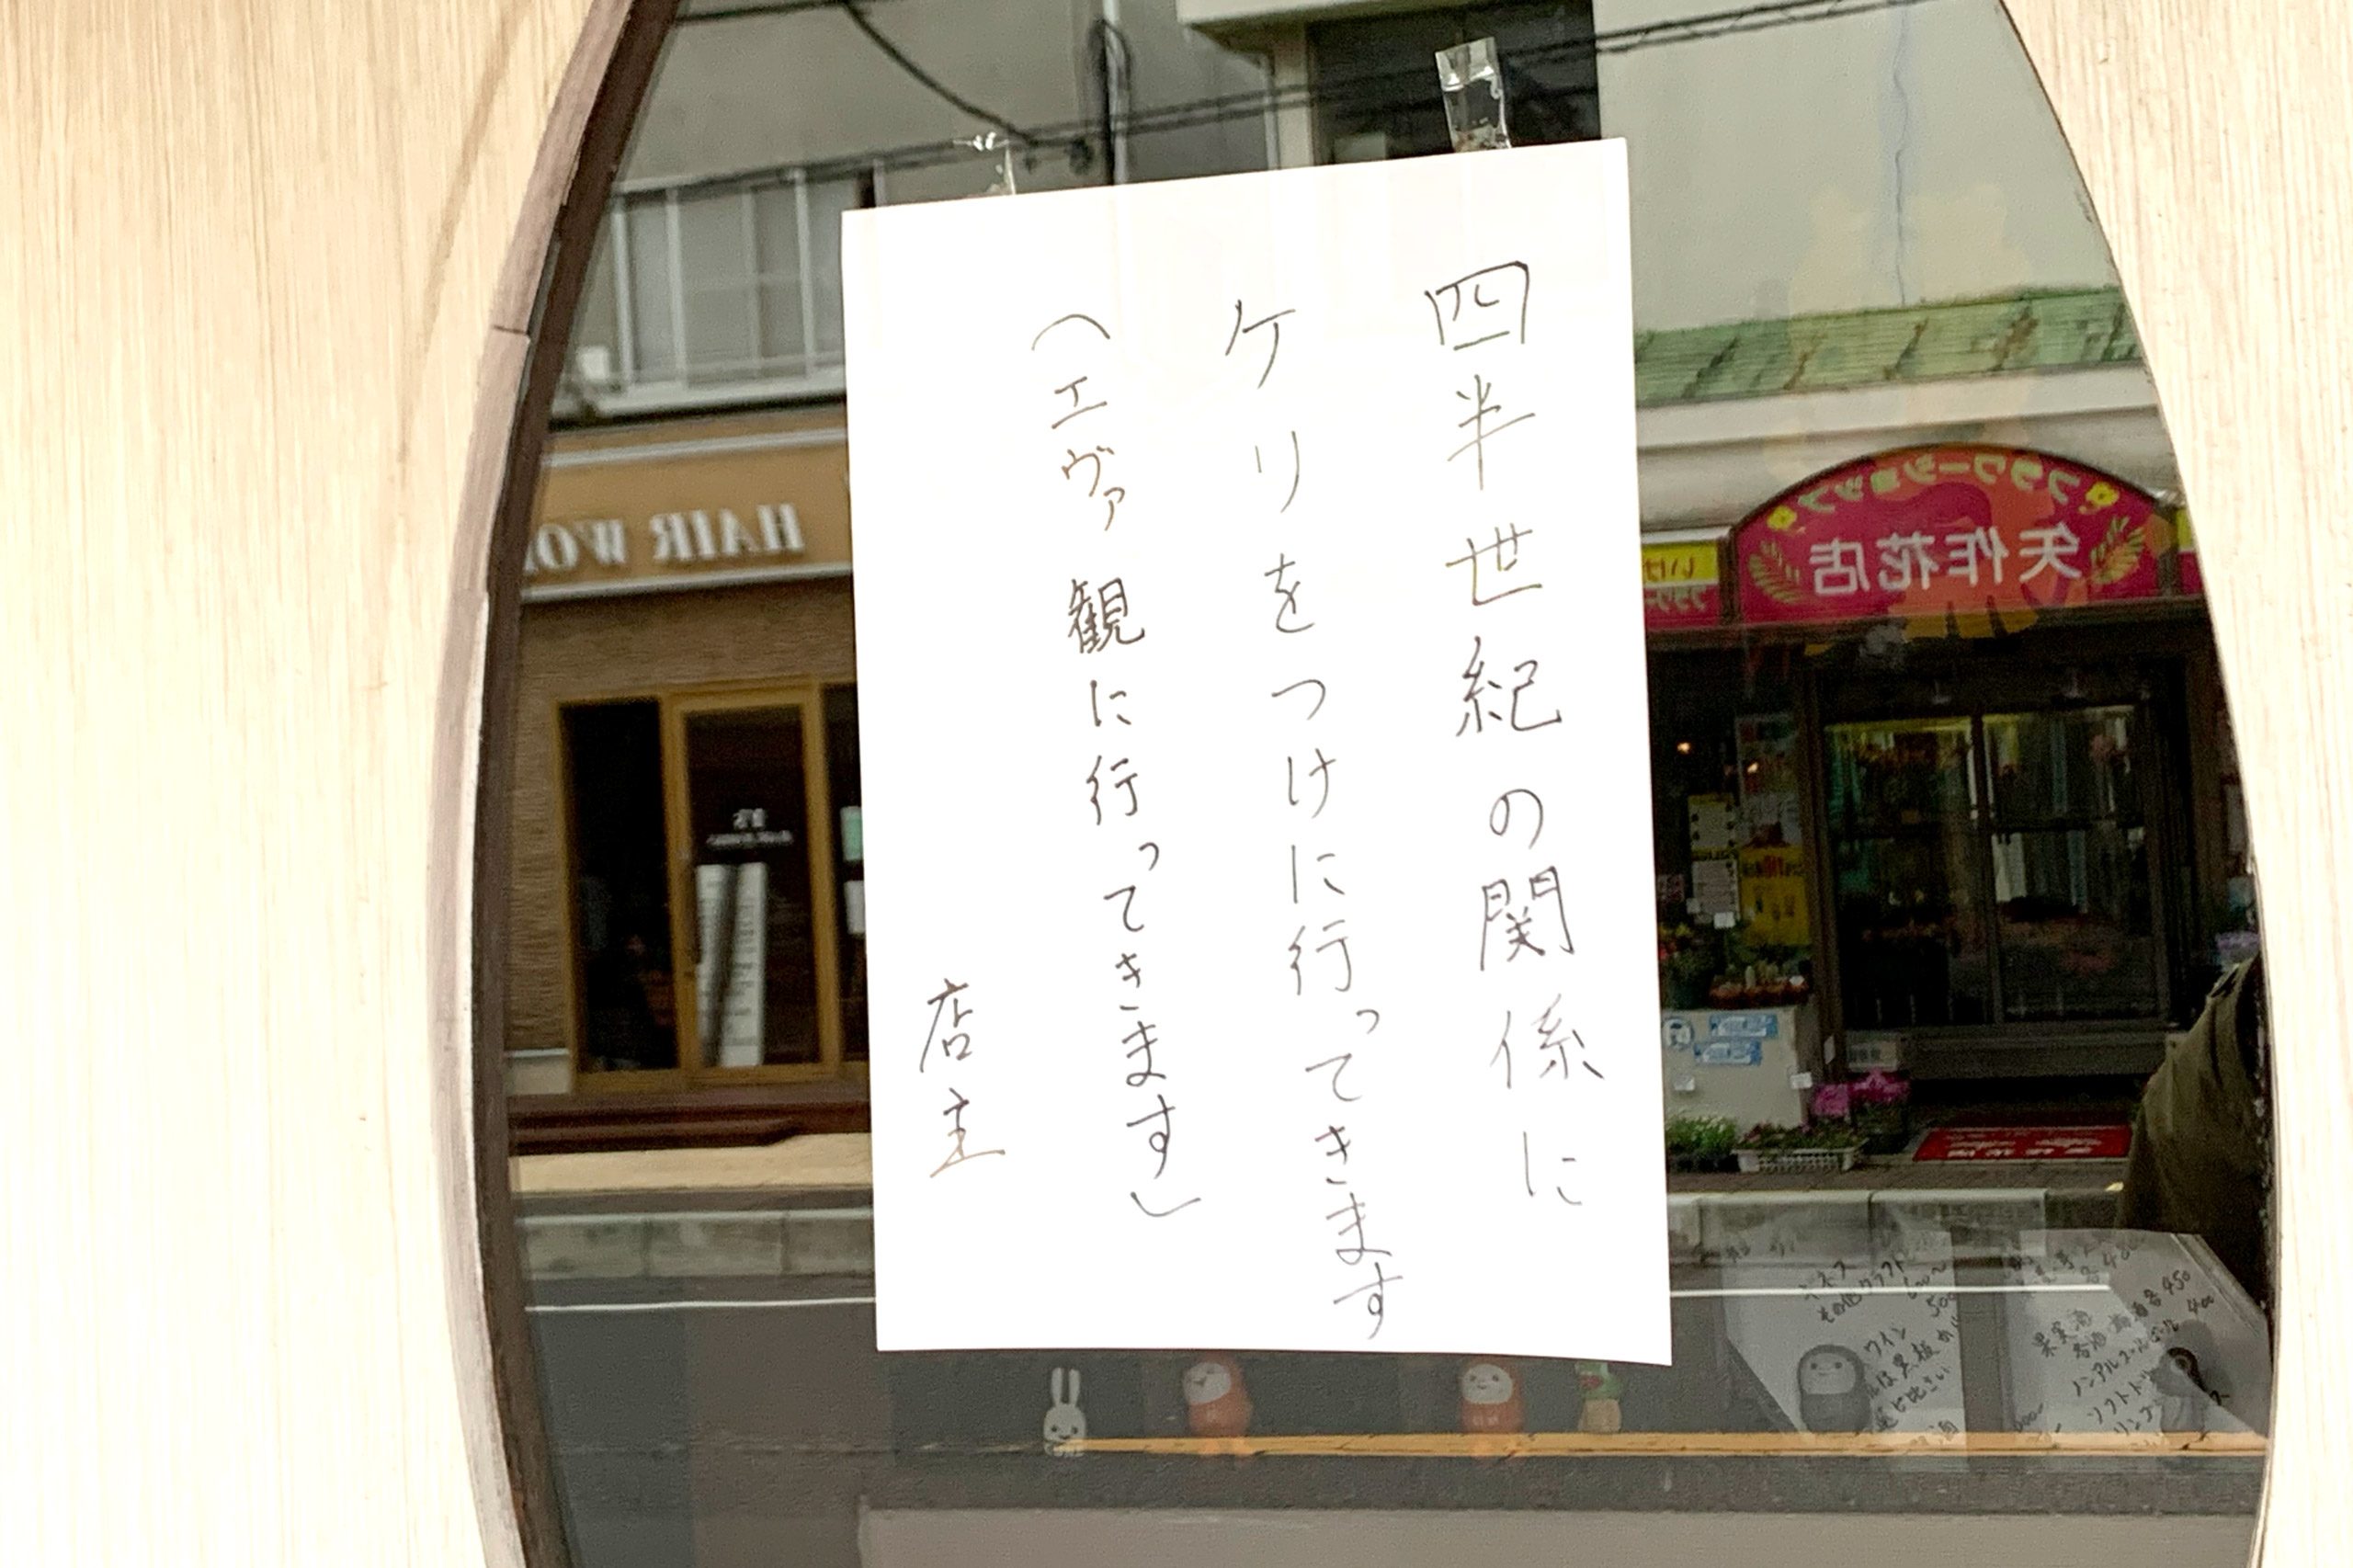 中華料理屋入り口に貼られた「果たし状」が話題 明らかに店主 ...